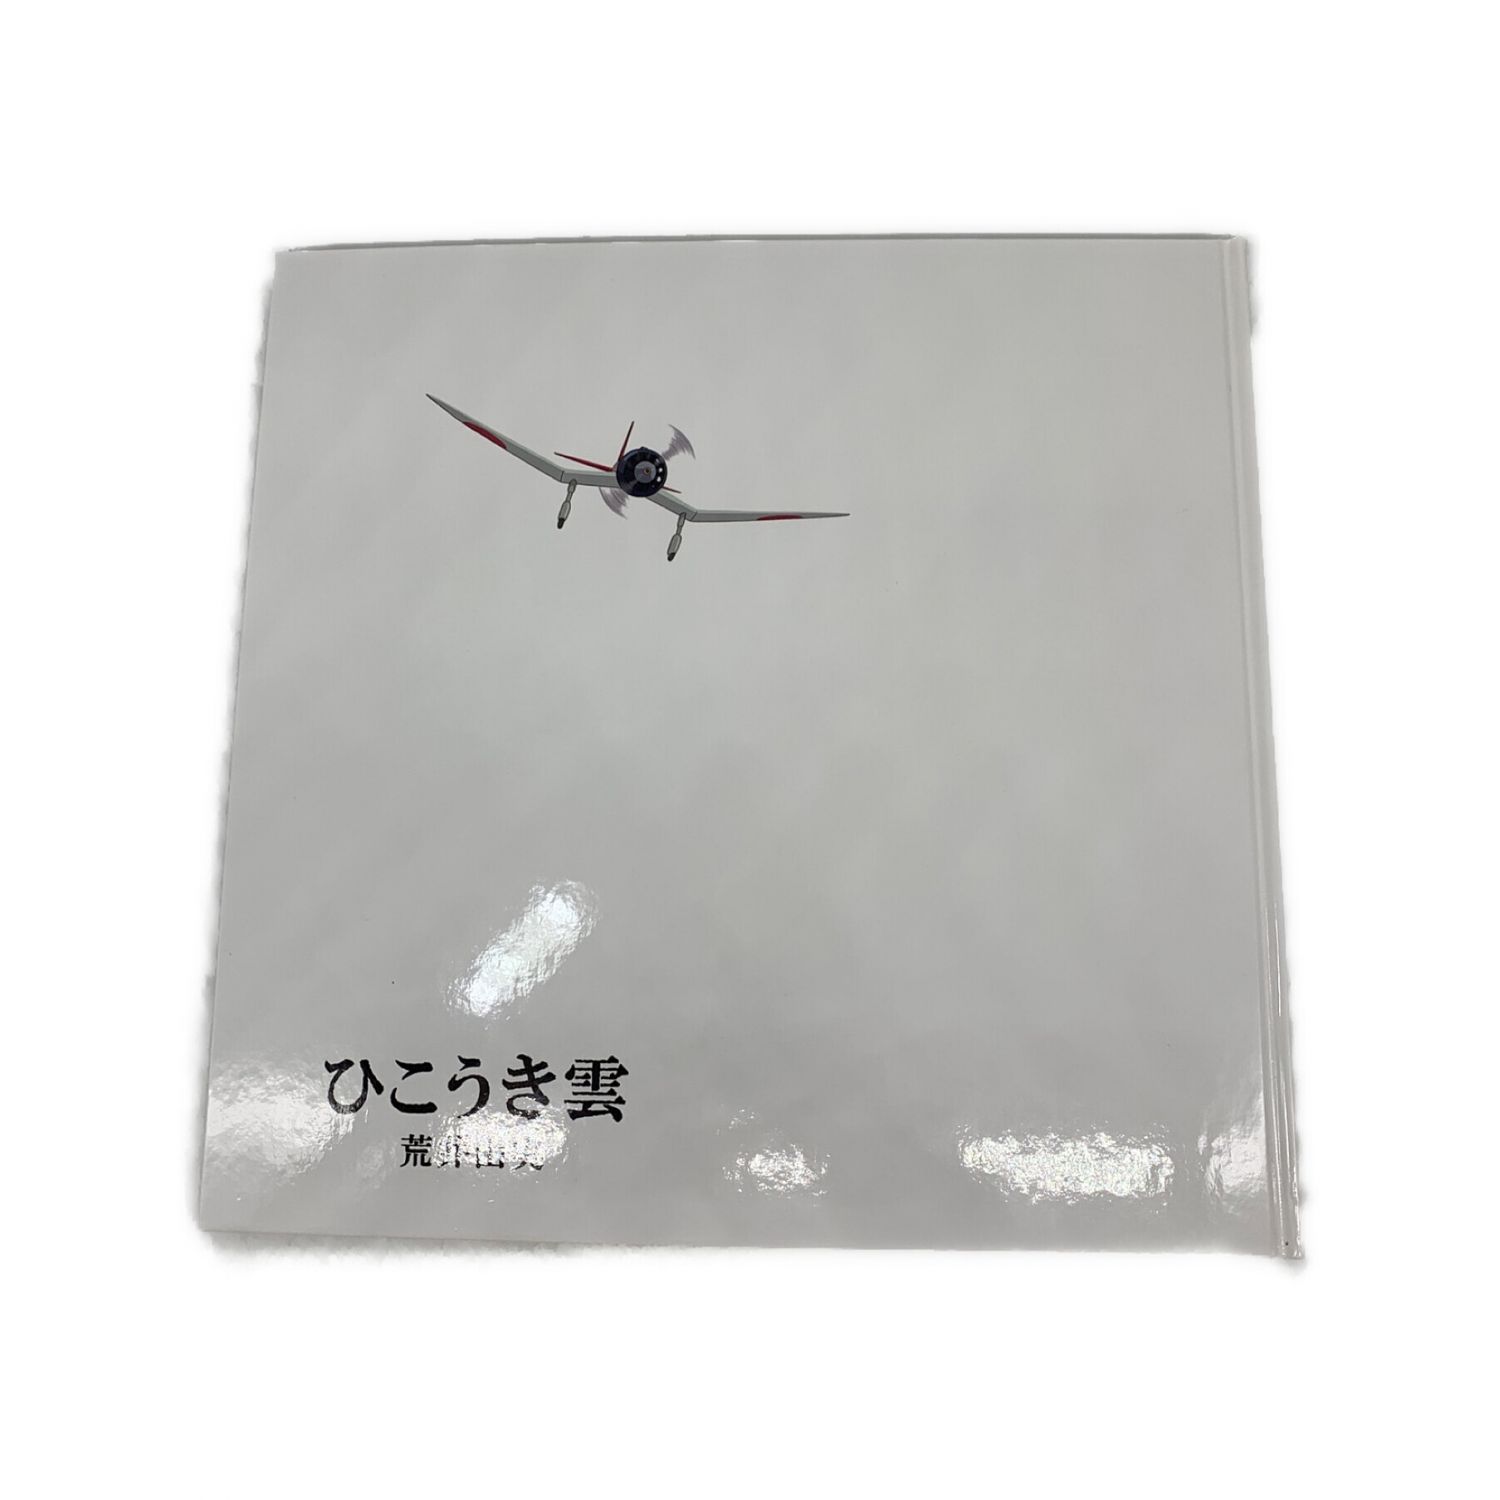 荒井由実 LP+CD+DVD ユーミン×スタジオジブリ ひこうき雲 40周年記念盤 